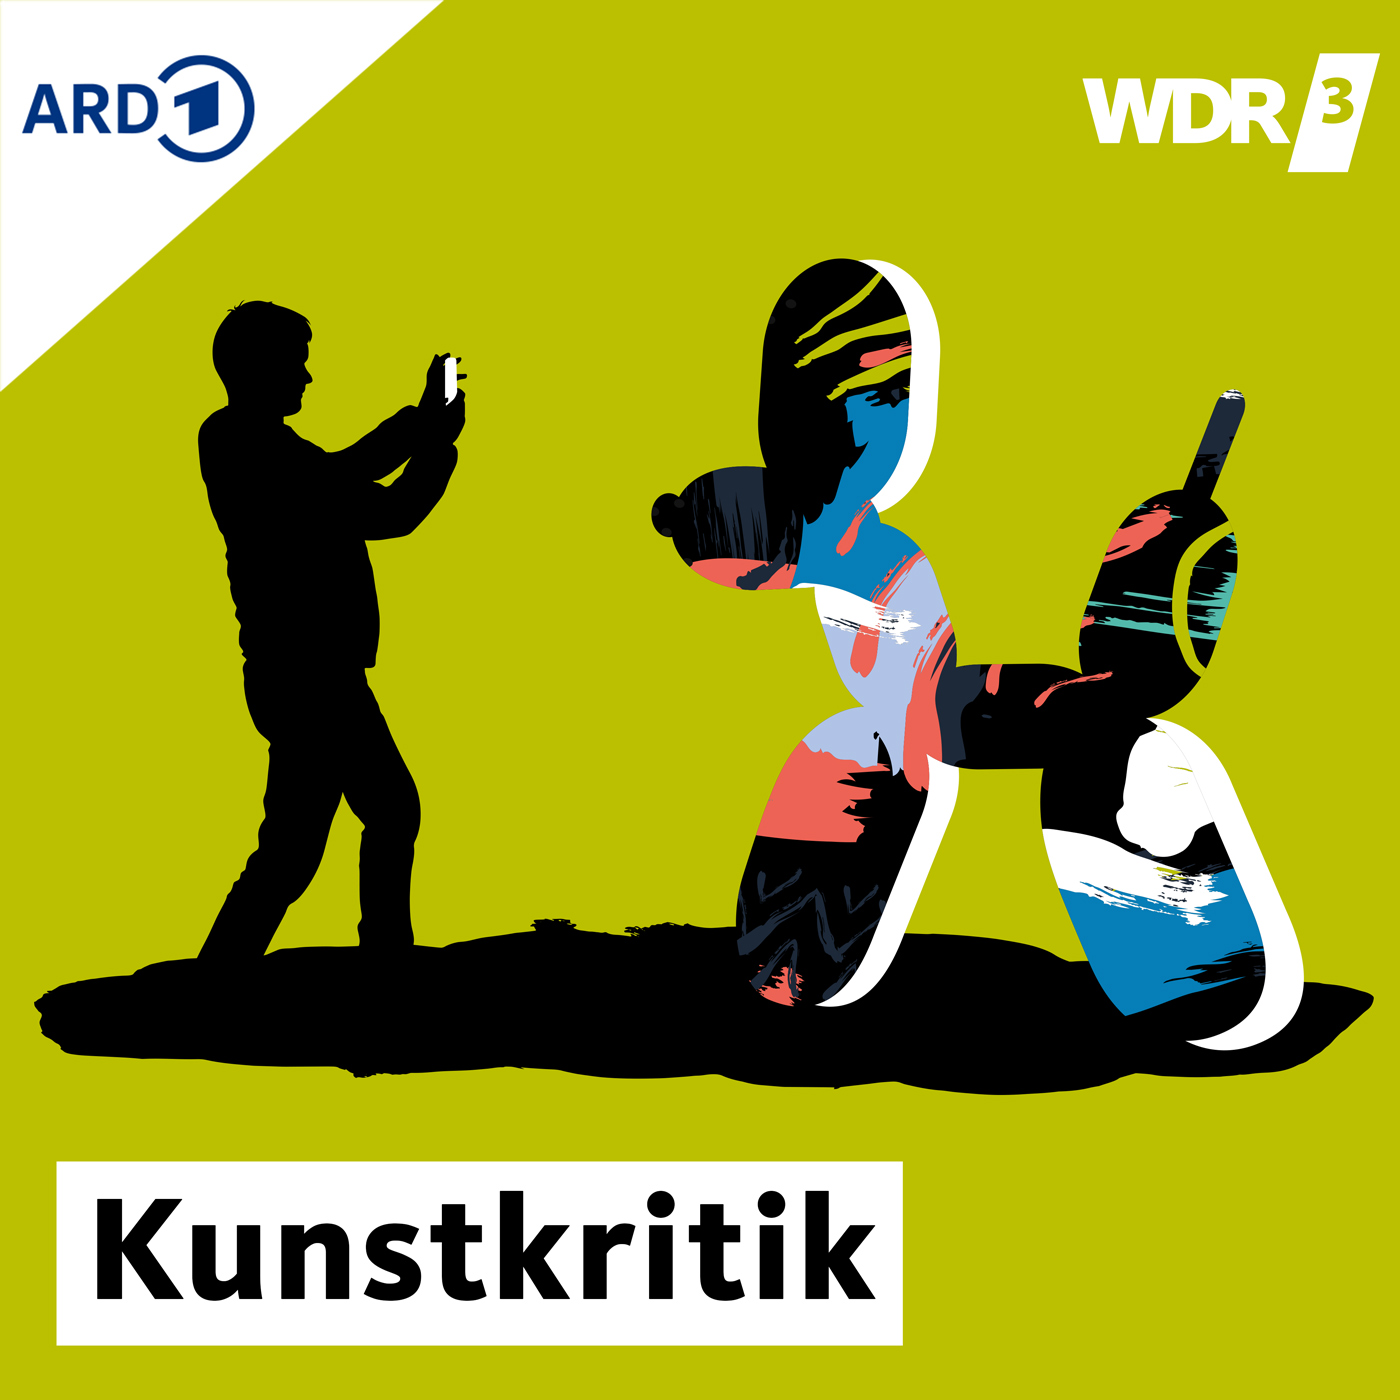 WDR 3 Kunstkritik - Ausstellungen in NRW